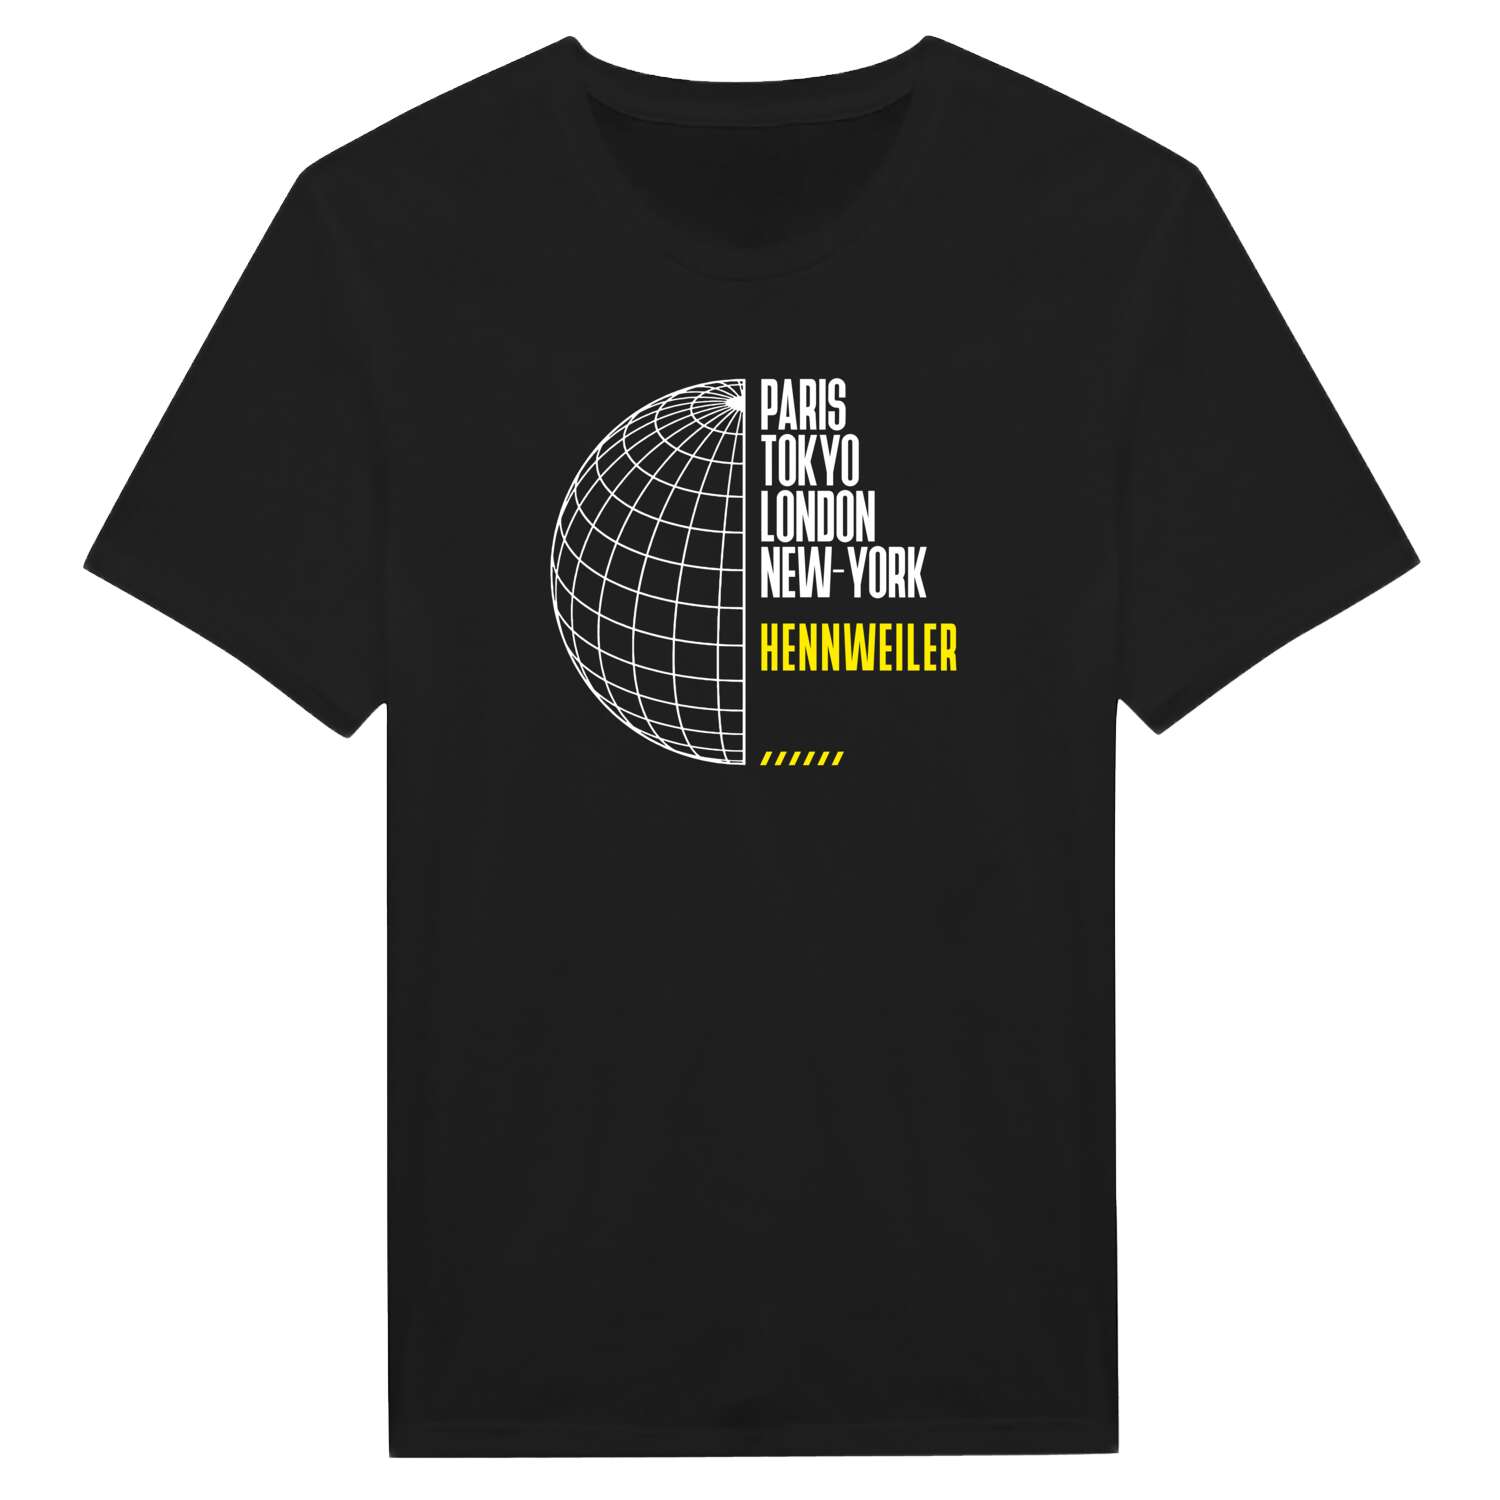 Hennweiler T-Shirt »Paris Tokyo London«